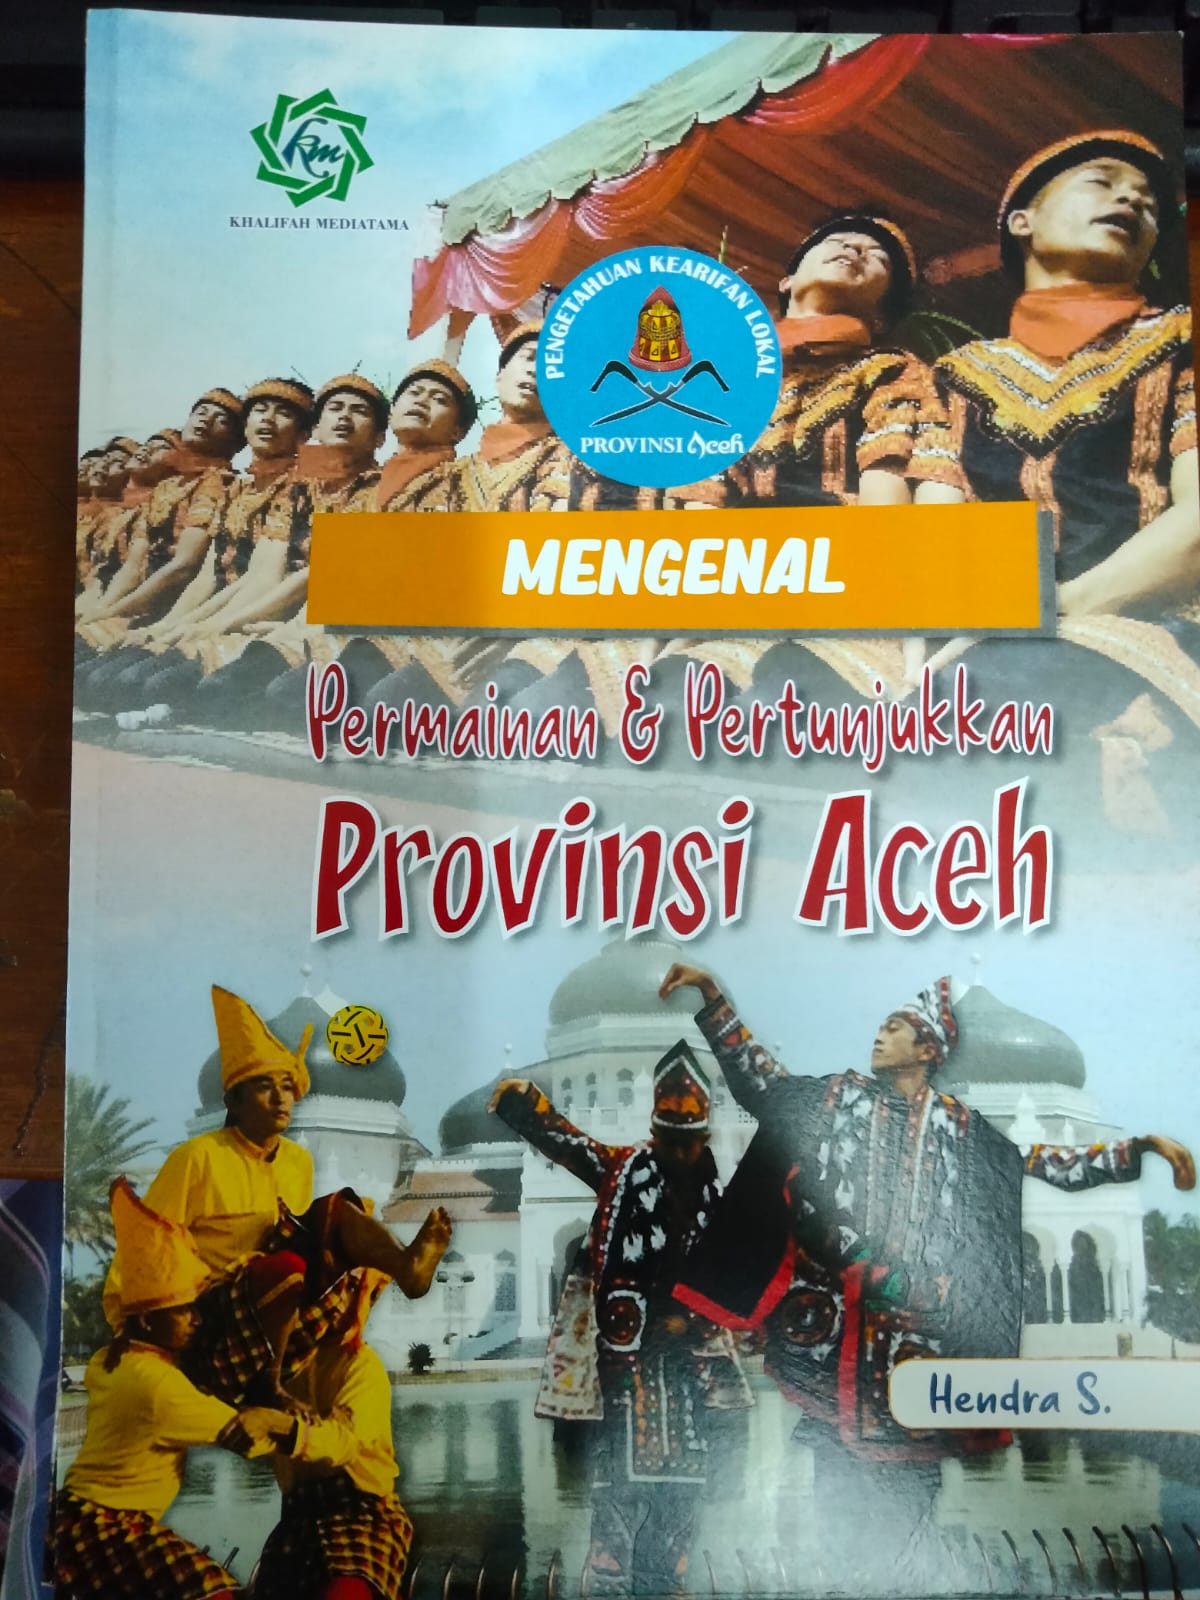 Mengenal permainan & pertunjukkan Provinsi Aceh